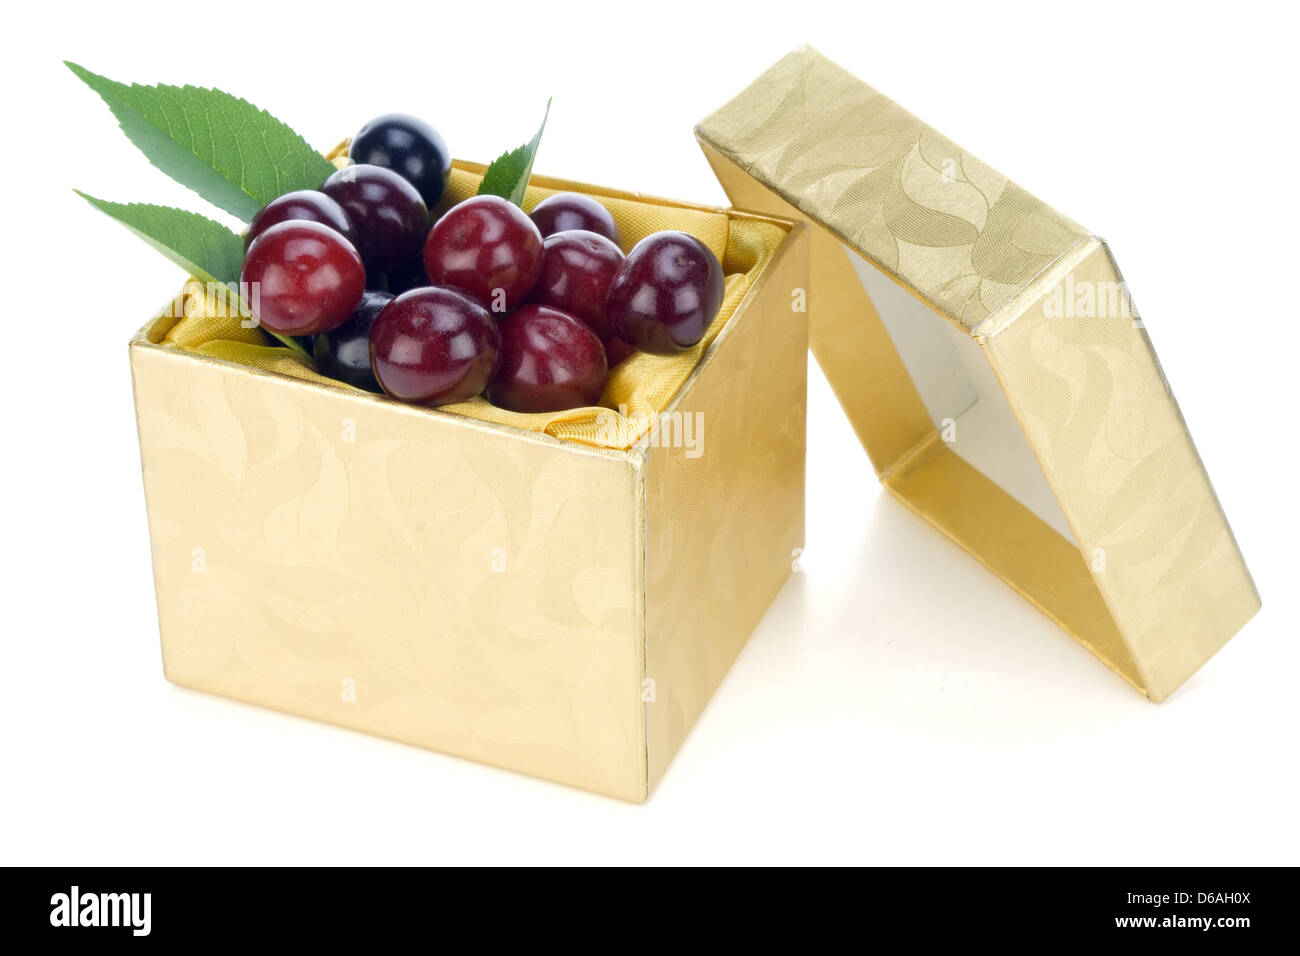 Cherries golden gift concept Stock Photo